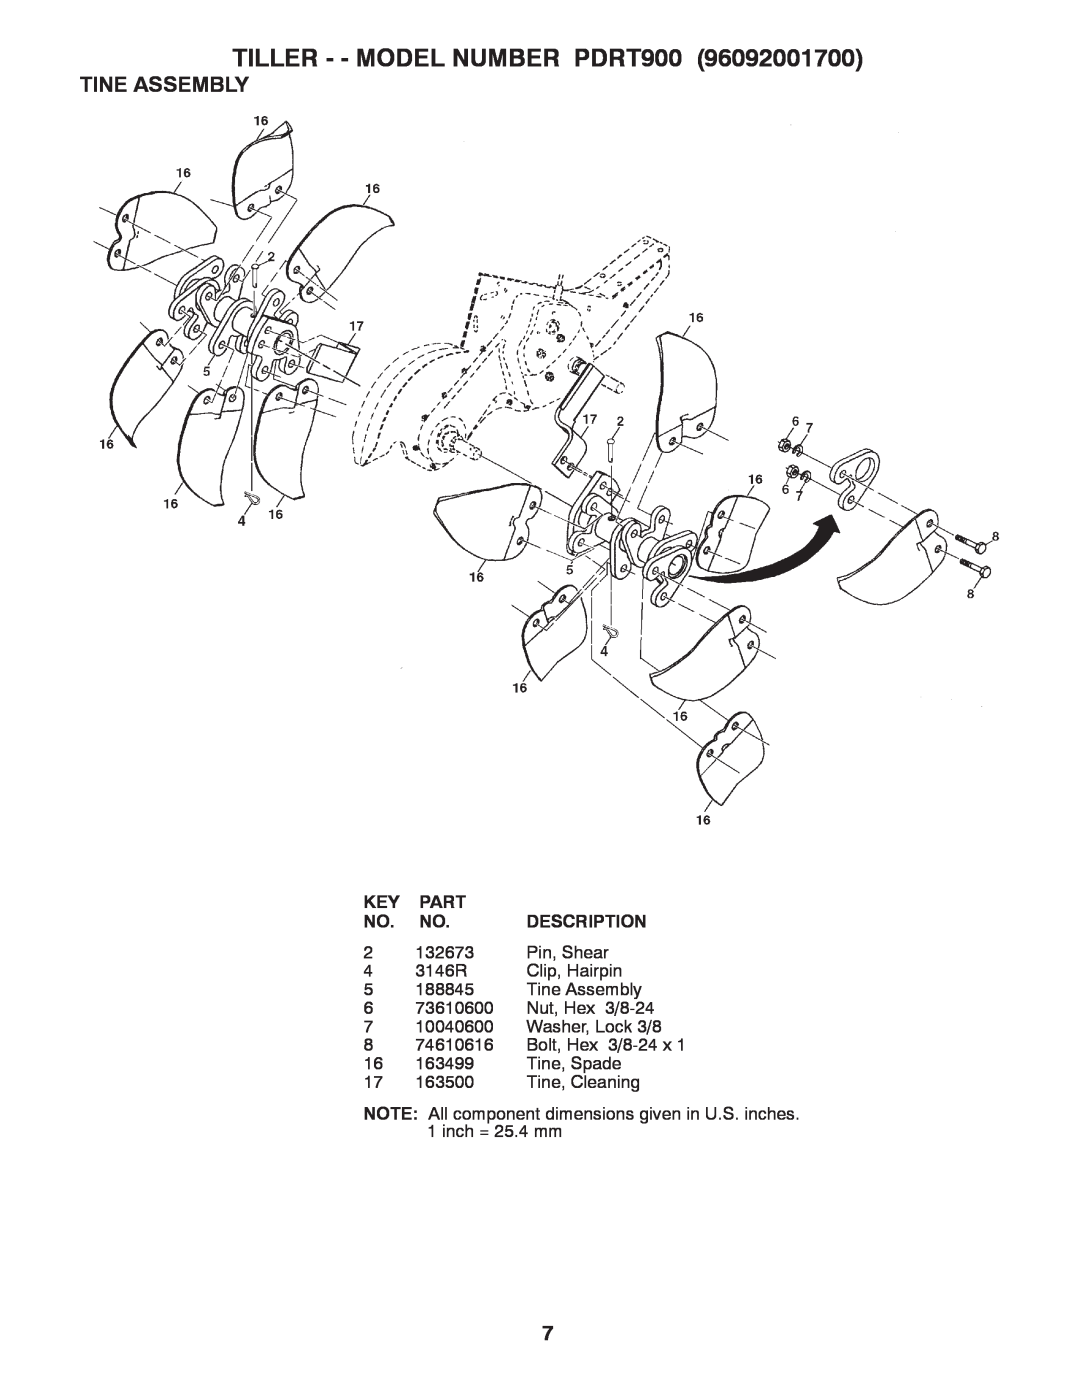 Poulan 96092001700 manual Tine Assembly, TILLER - - MODEL NUMBER PDRT900, Part, Description 